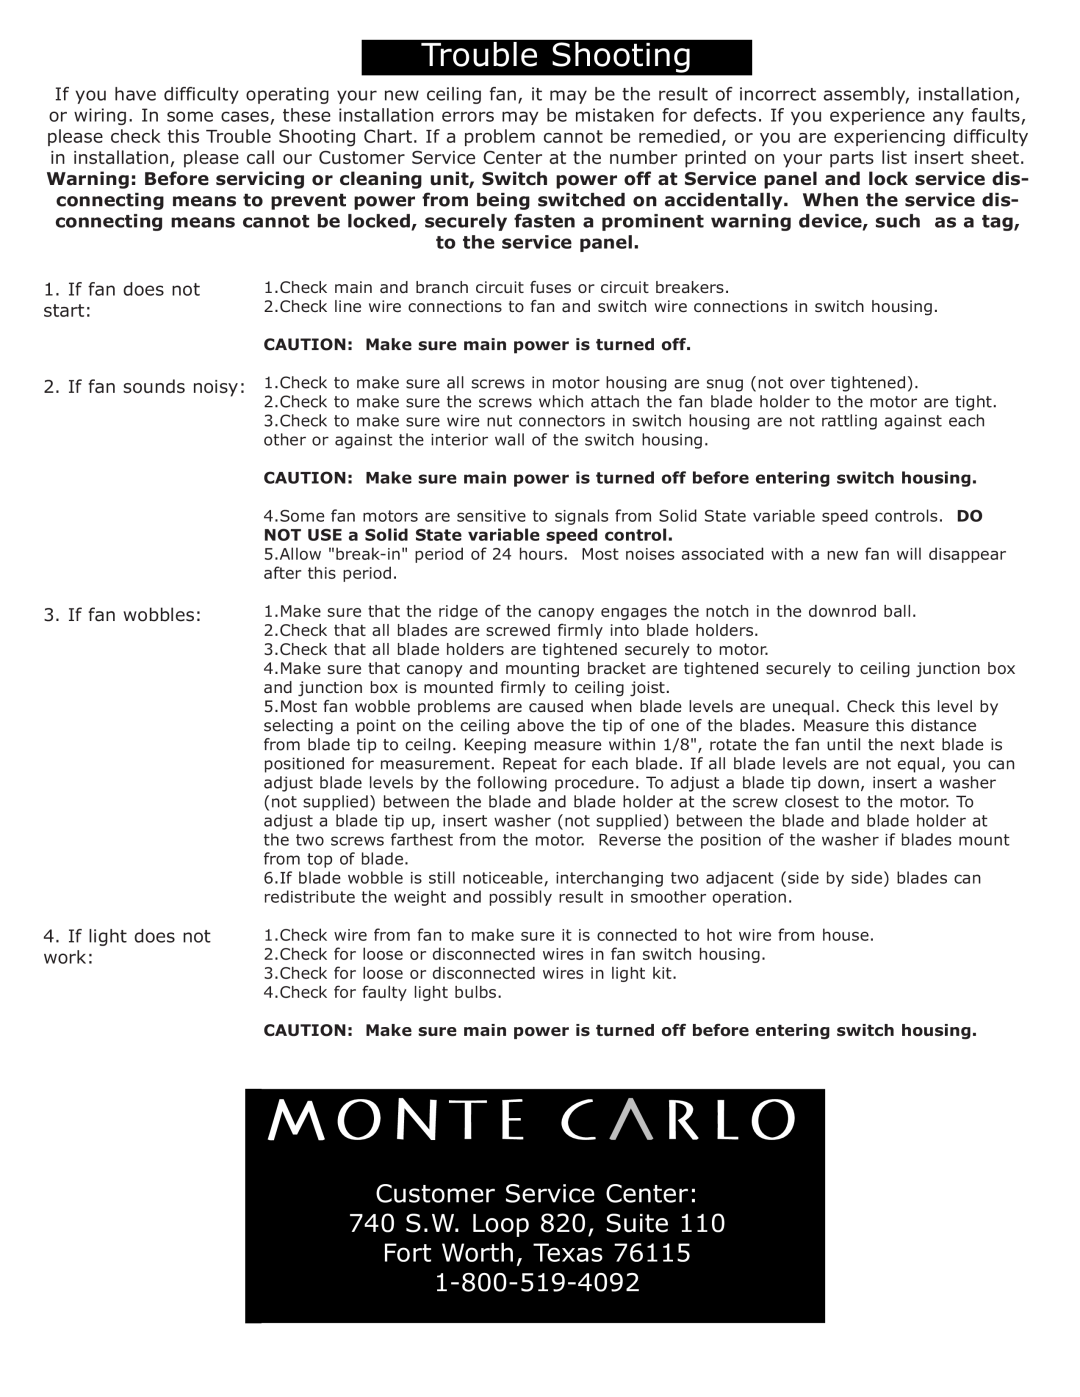 Monte Carlo Fan Company 5PE56 Customer Service Center 740 S.W. Loop 820, Suite, If fan wobbles 4.If light does not work 